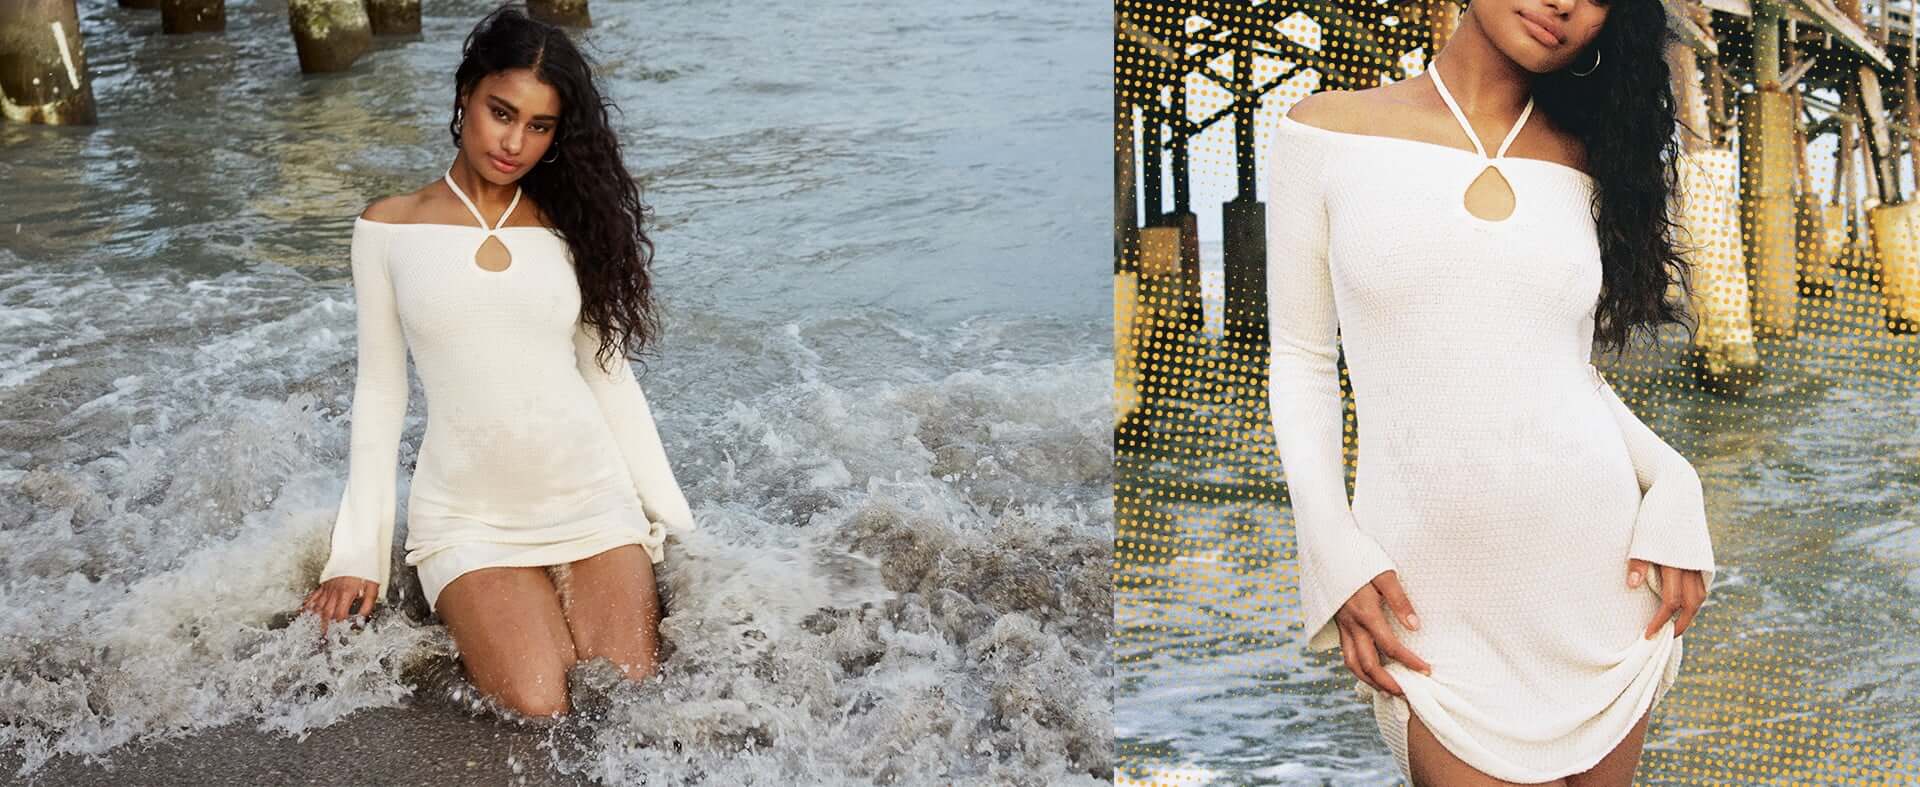 La mannequin prend la pose dans l'eau avec une robe blanche à épaules dégagées.